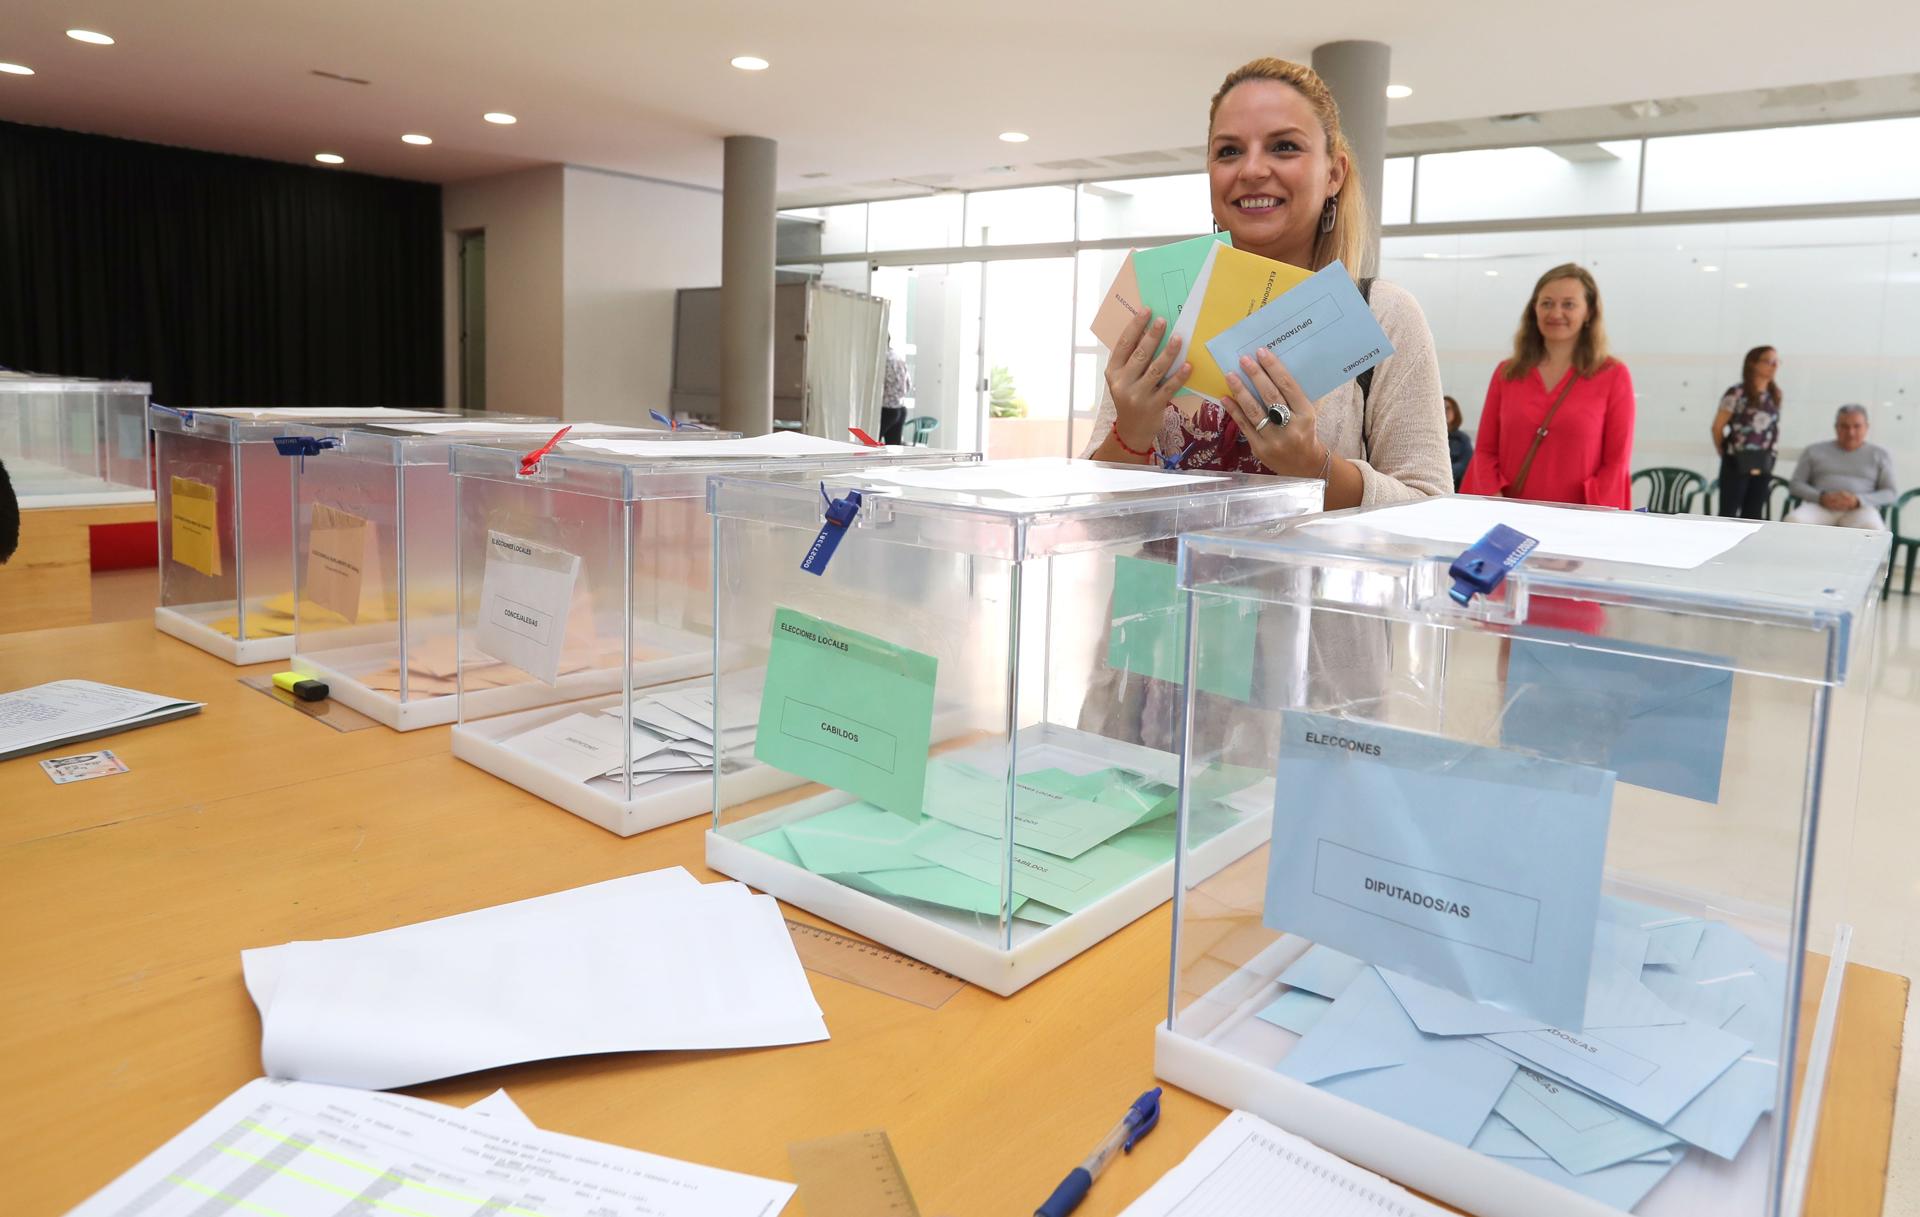 Foto de archivo de la candidata de Podemos a presidenta de Canarias, Noemí Santana, tomada en las elecciones autonómicas y locales de mayo de 2019. EFE/Elvira Urquijo A.